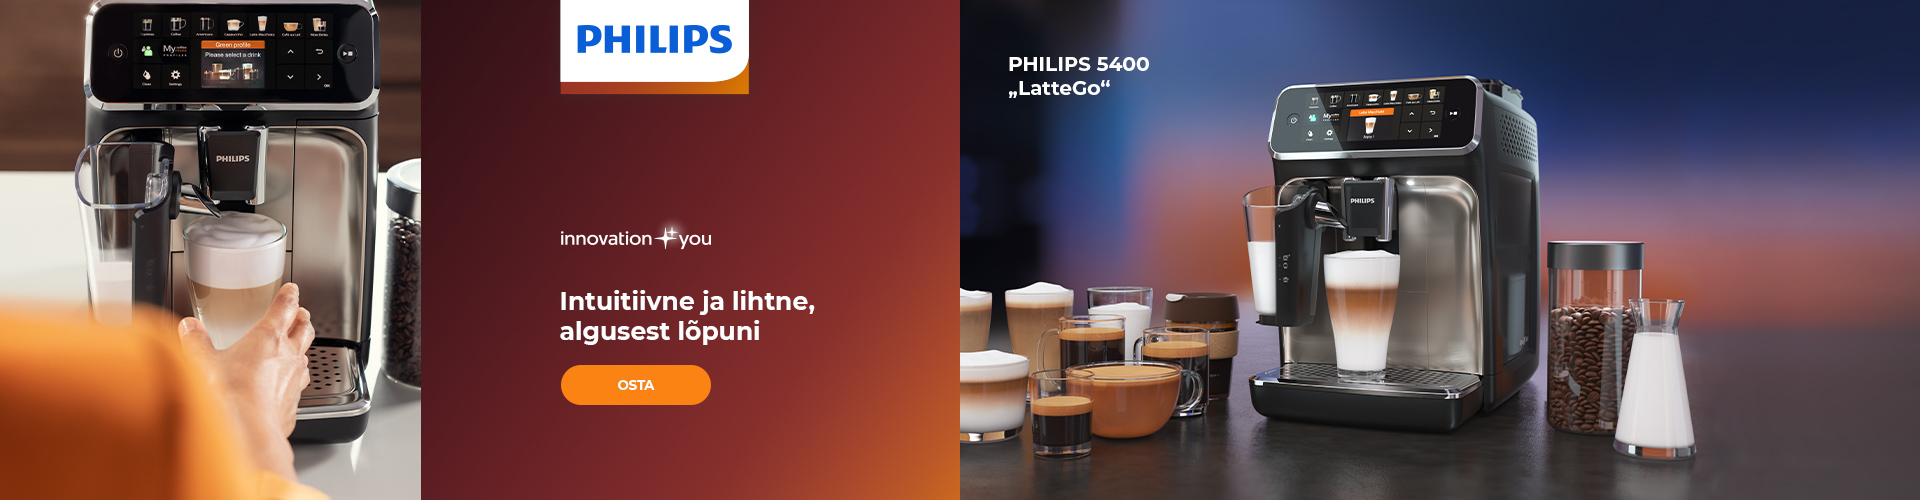 PHILIPS 5400 „LatteGo“